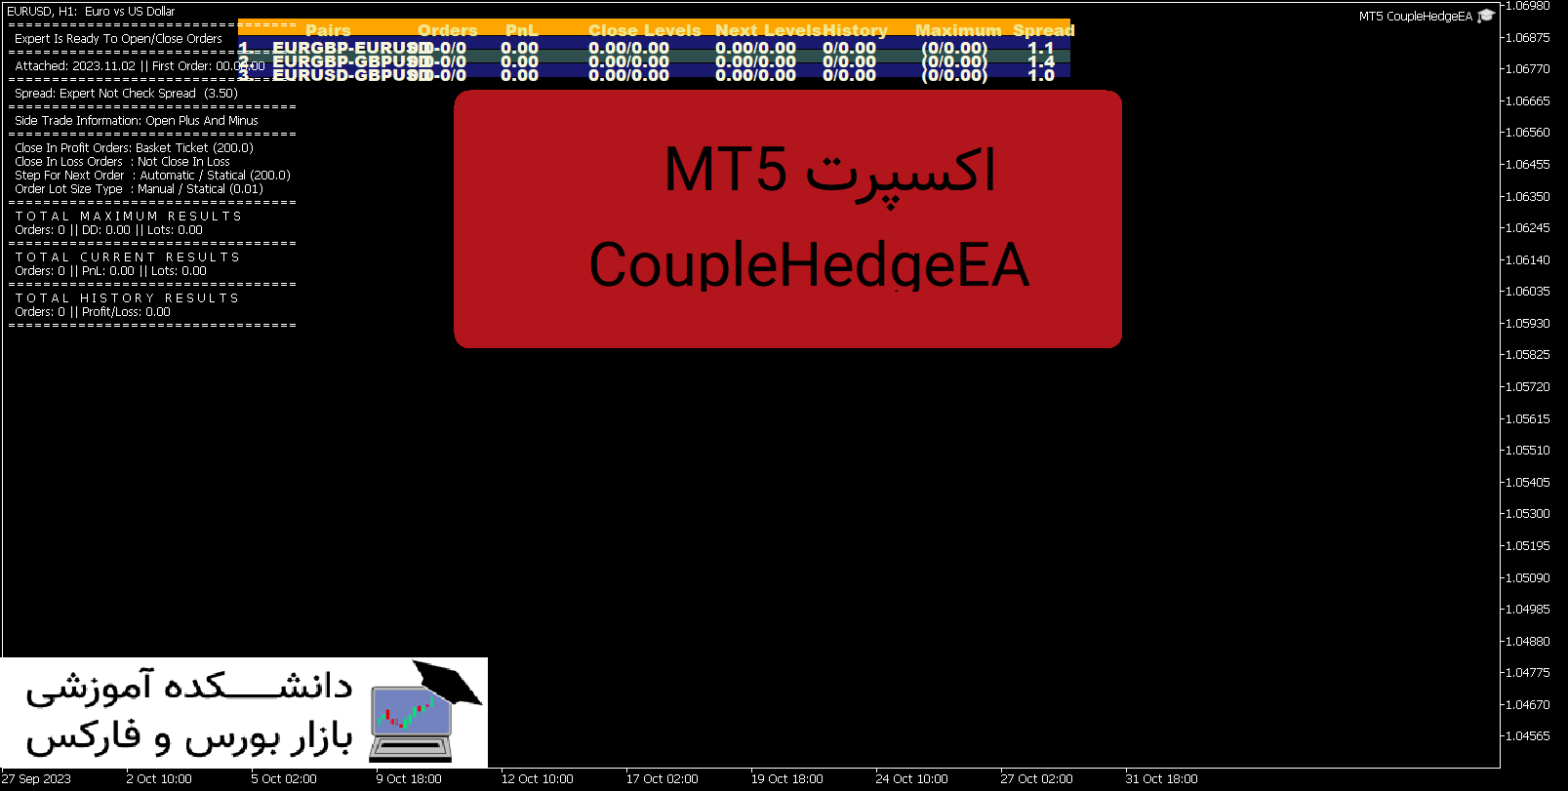 MT5 CoupleHedgeEA دانلود و معرفی اکسپرت